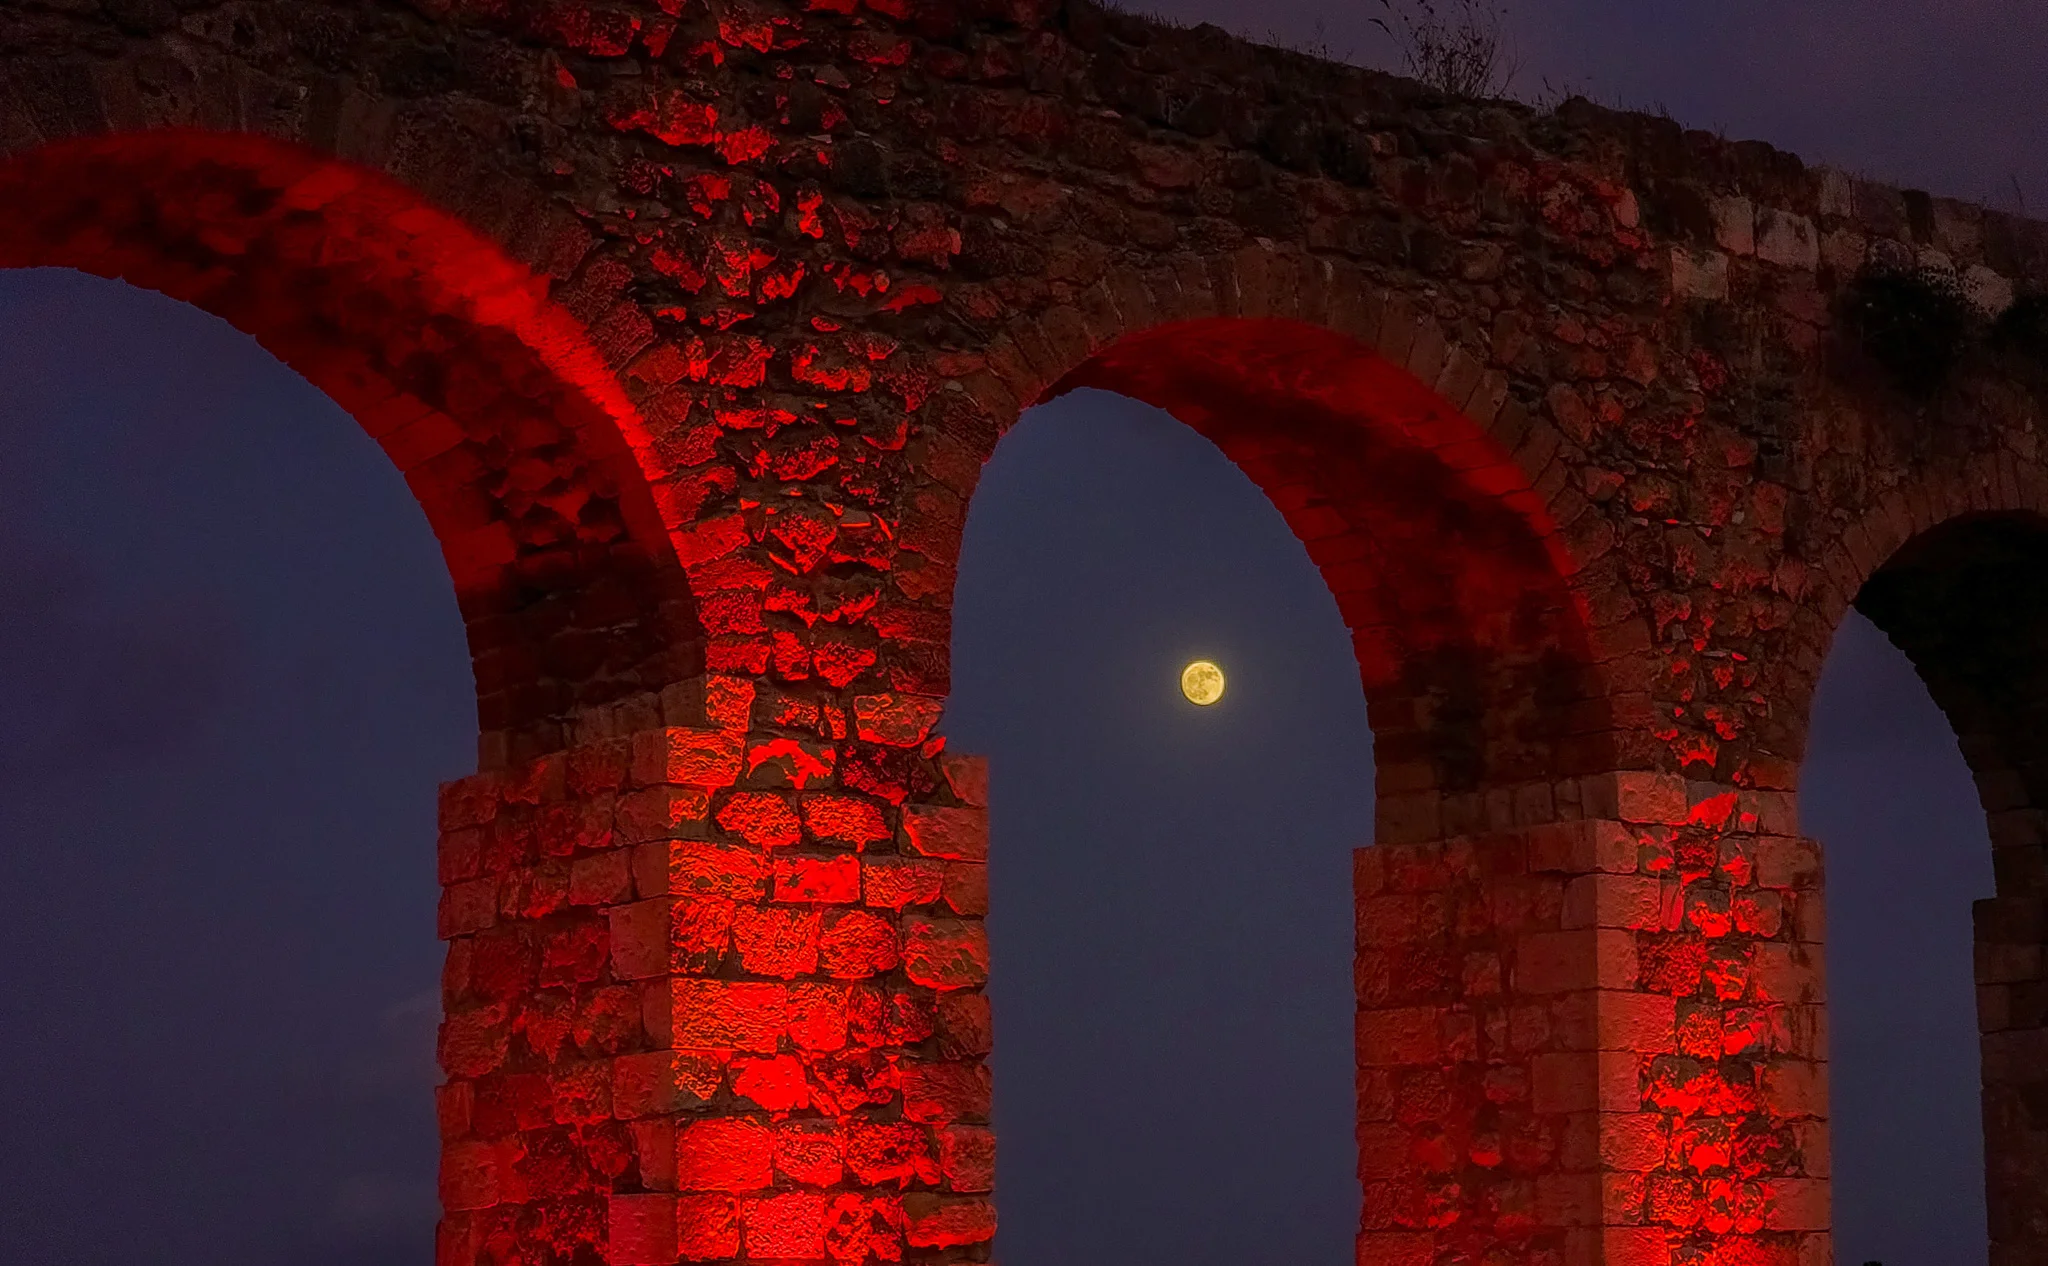 הירח המלא ממוקם בצורה מושלמת בין קשתות אמת המים העתיקה בקיבוץ לוחמי הגטאות בישראל, מתחת שמים אפלים.